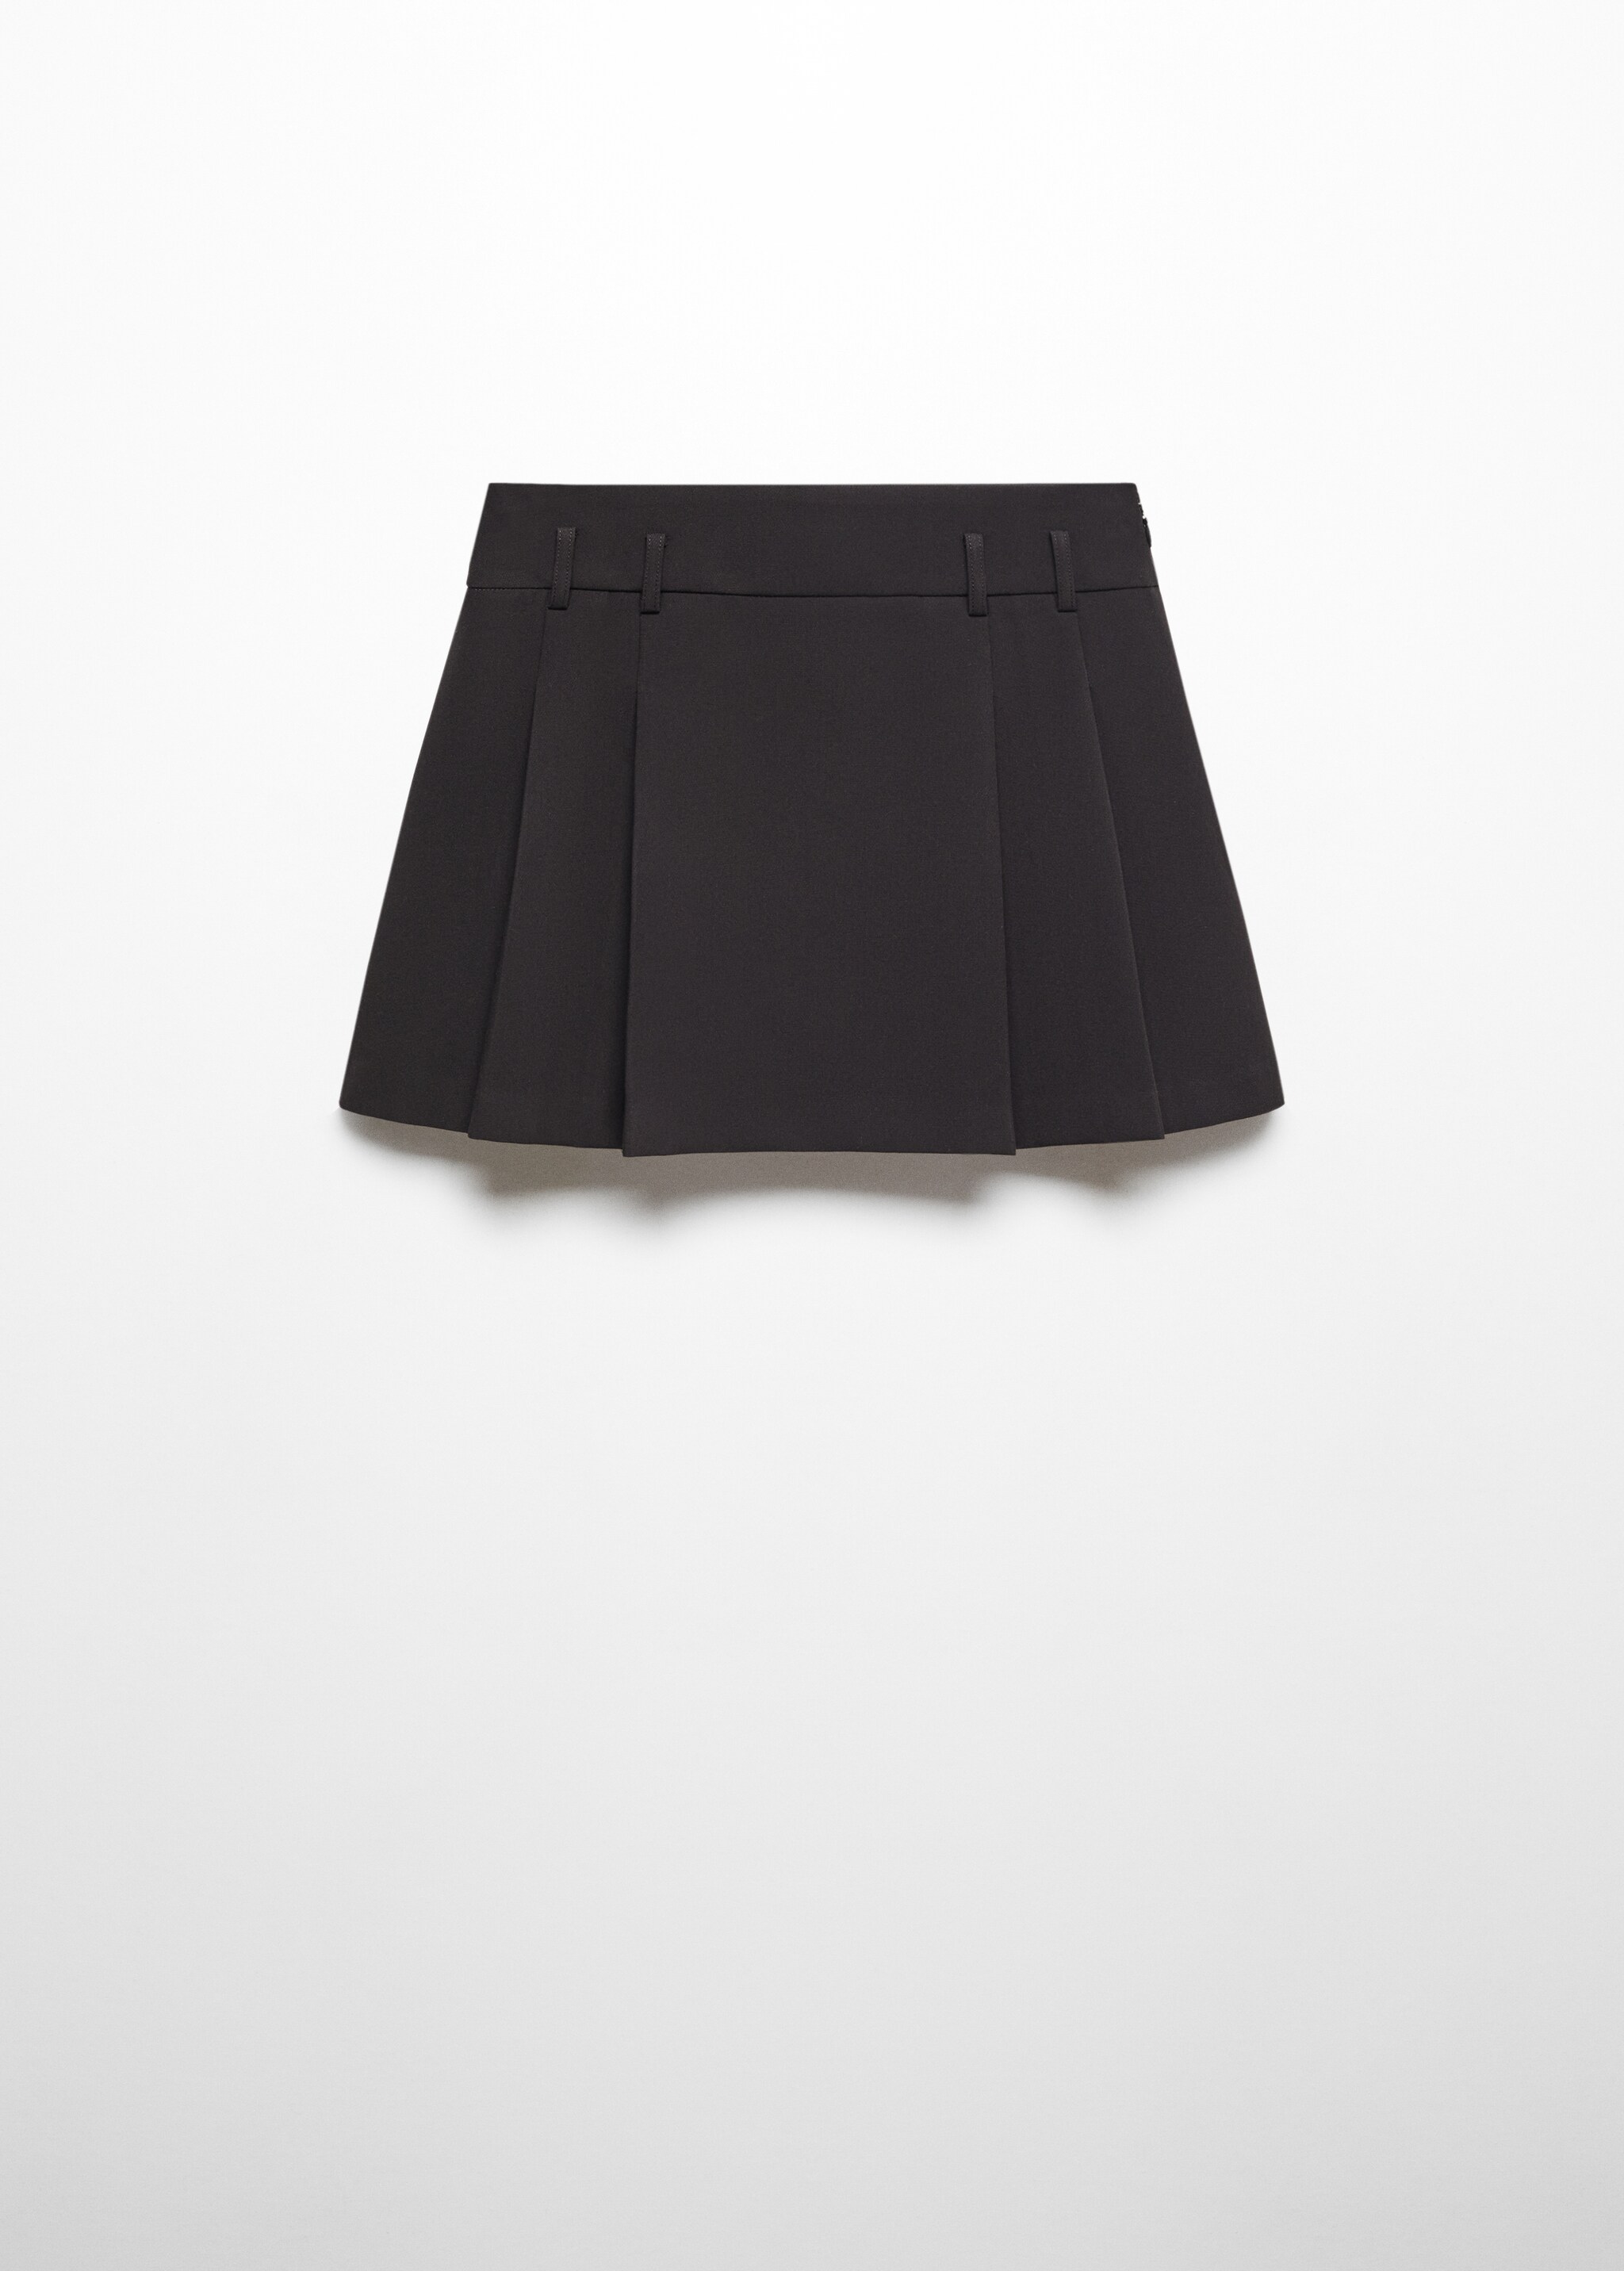 Minifalda tablas - Artículo sin modelo